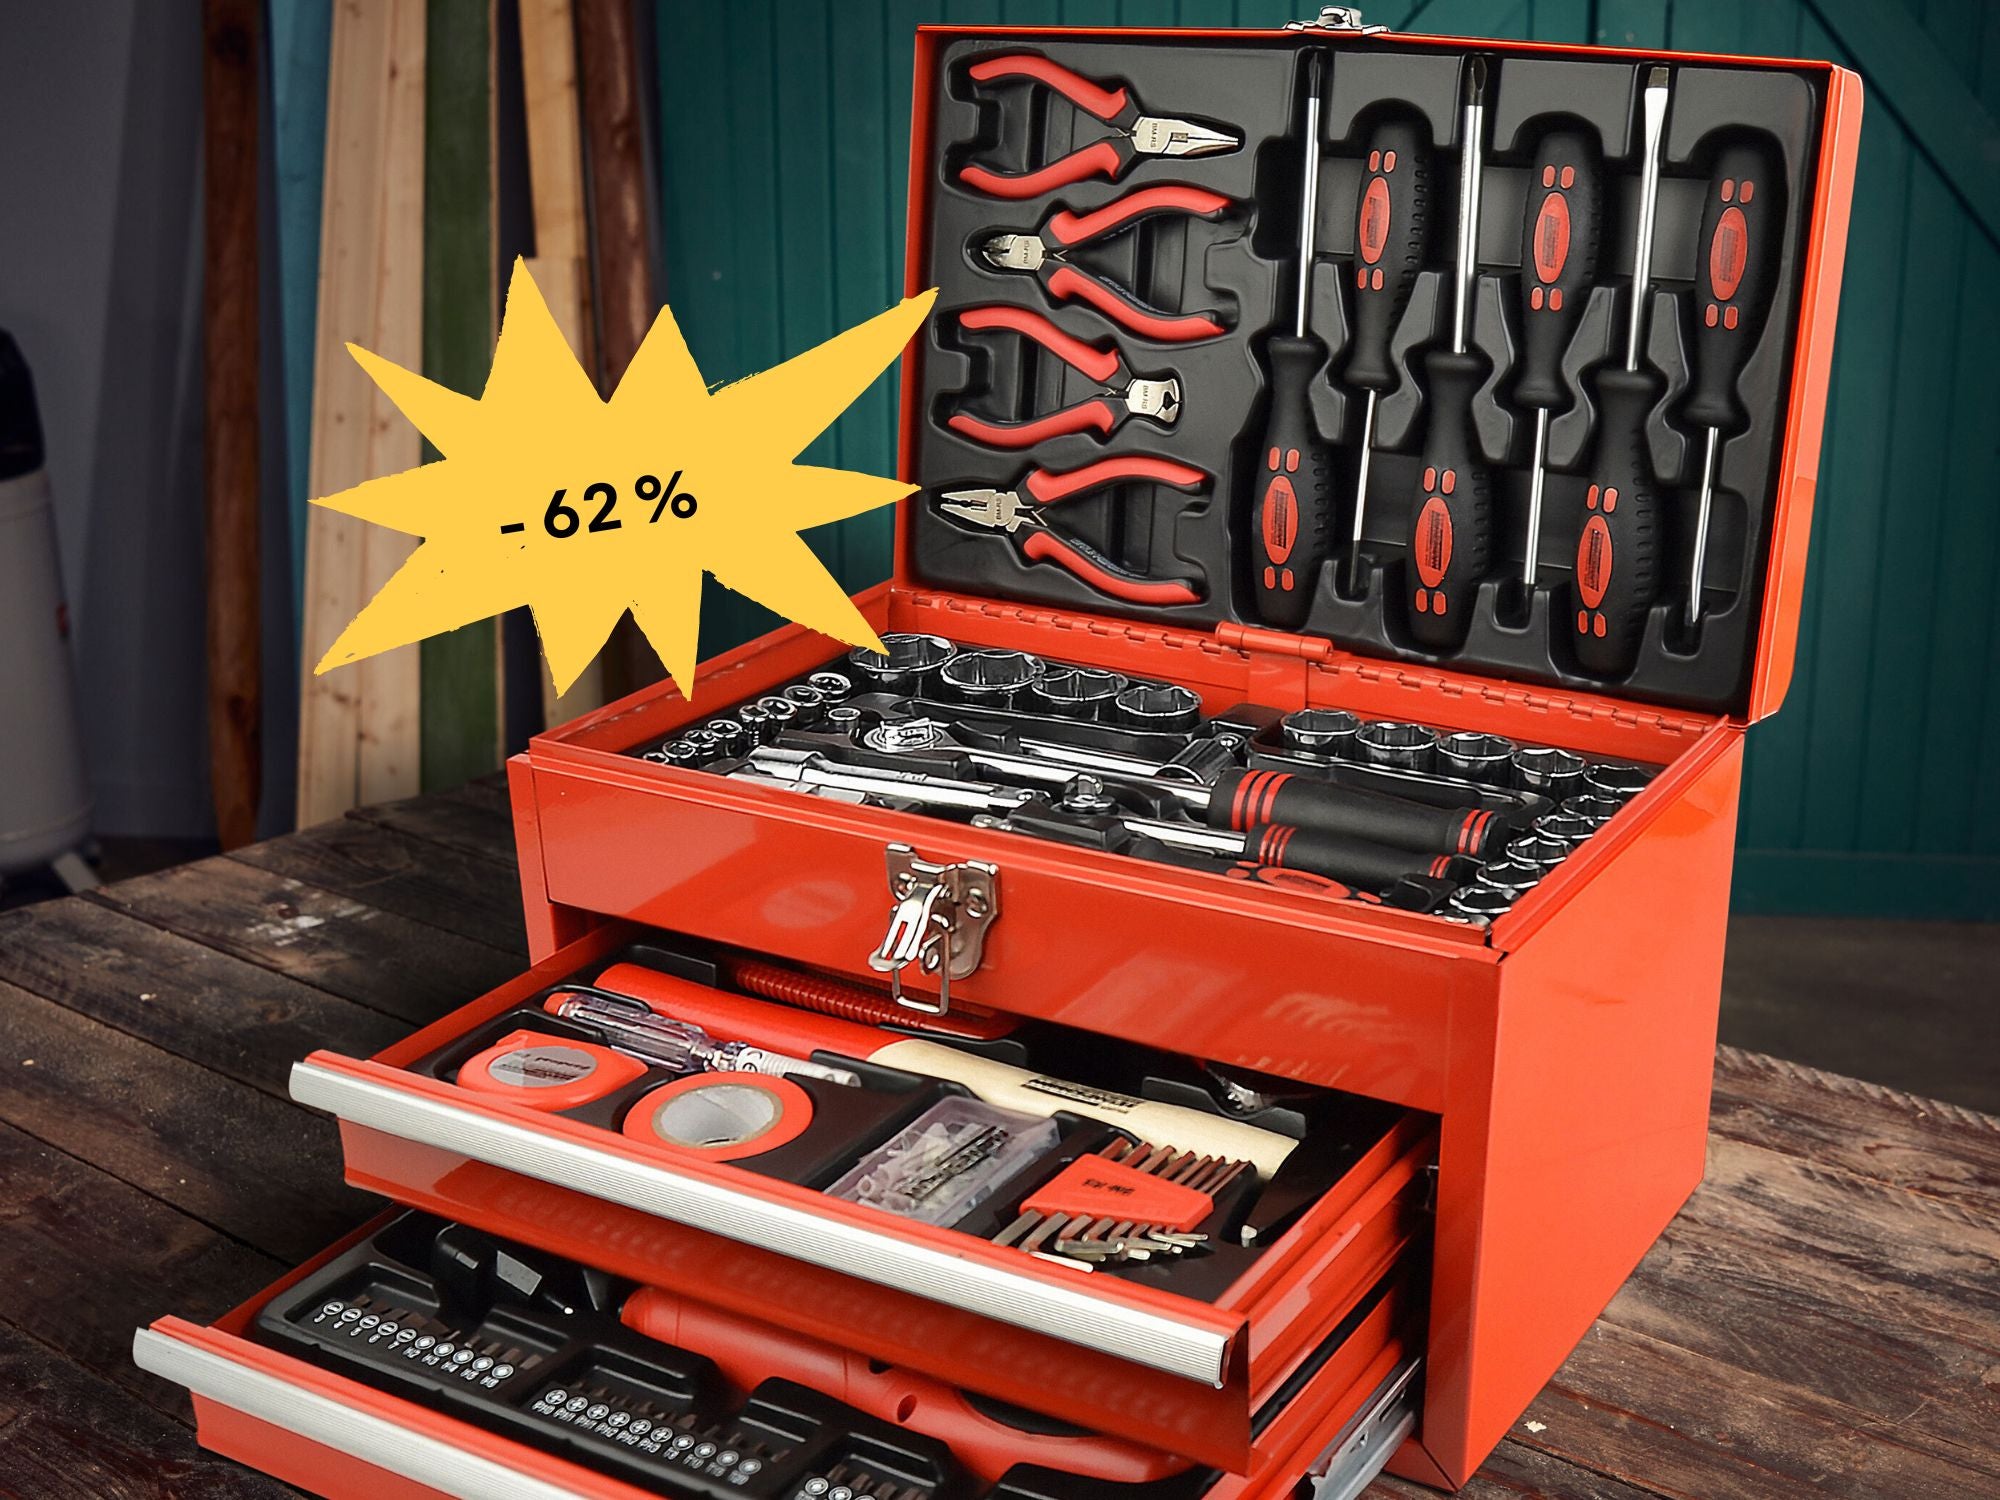 62 % Rabatt - Aldi verkauft üppige Werkzeugbox mit Akkuschrauber für unter 70 Euro